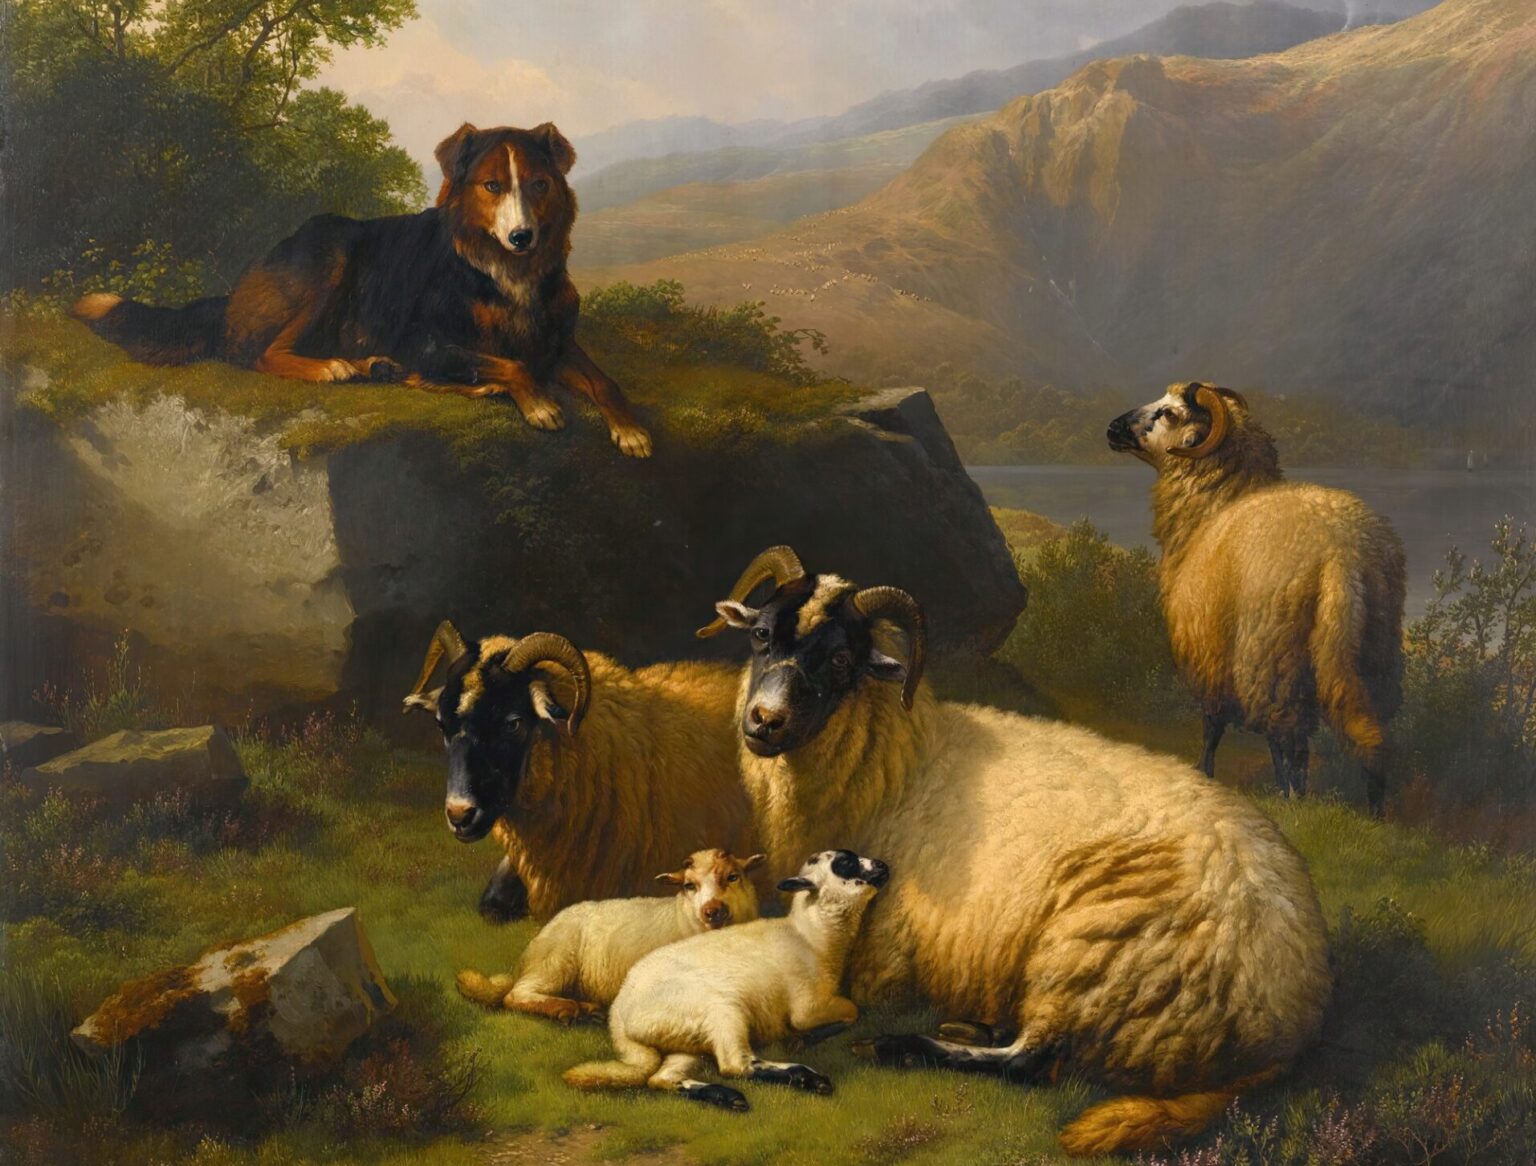 羊を守る牧羊犬